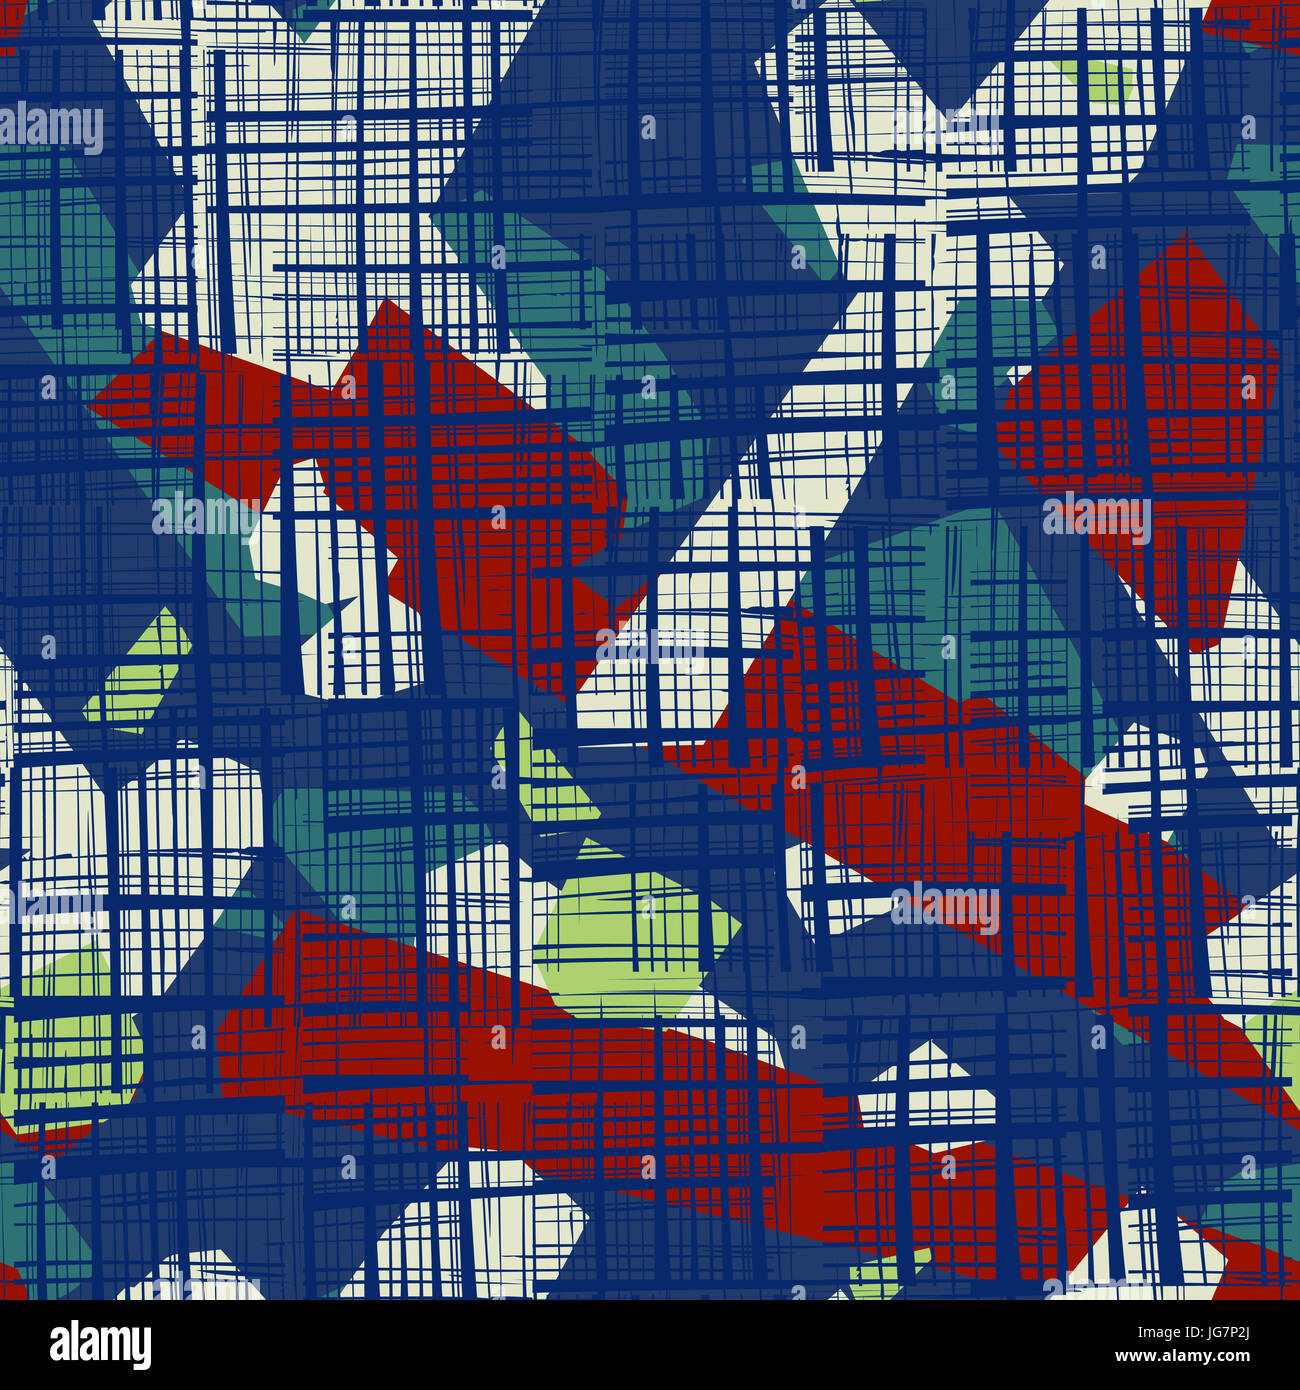 Résumé motif transparent. Grunge texture background aléatoire de bandes rayées et des formes géométriques Banque D'Images